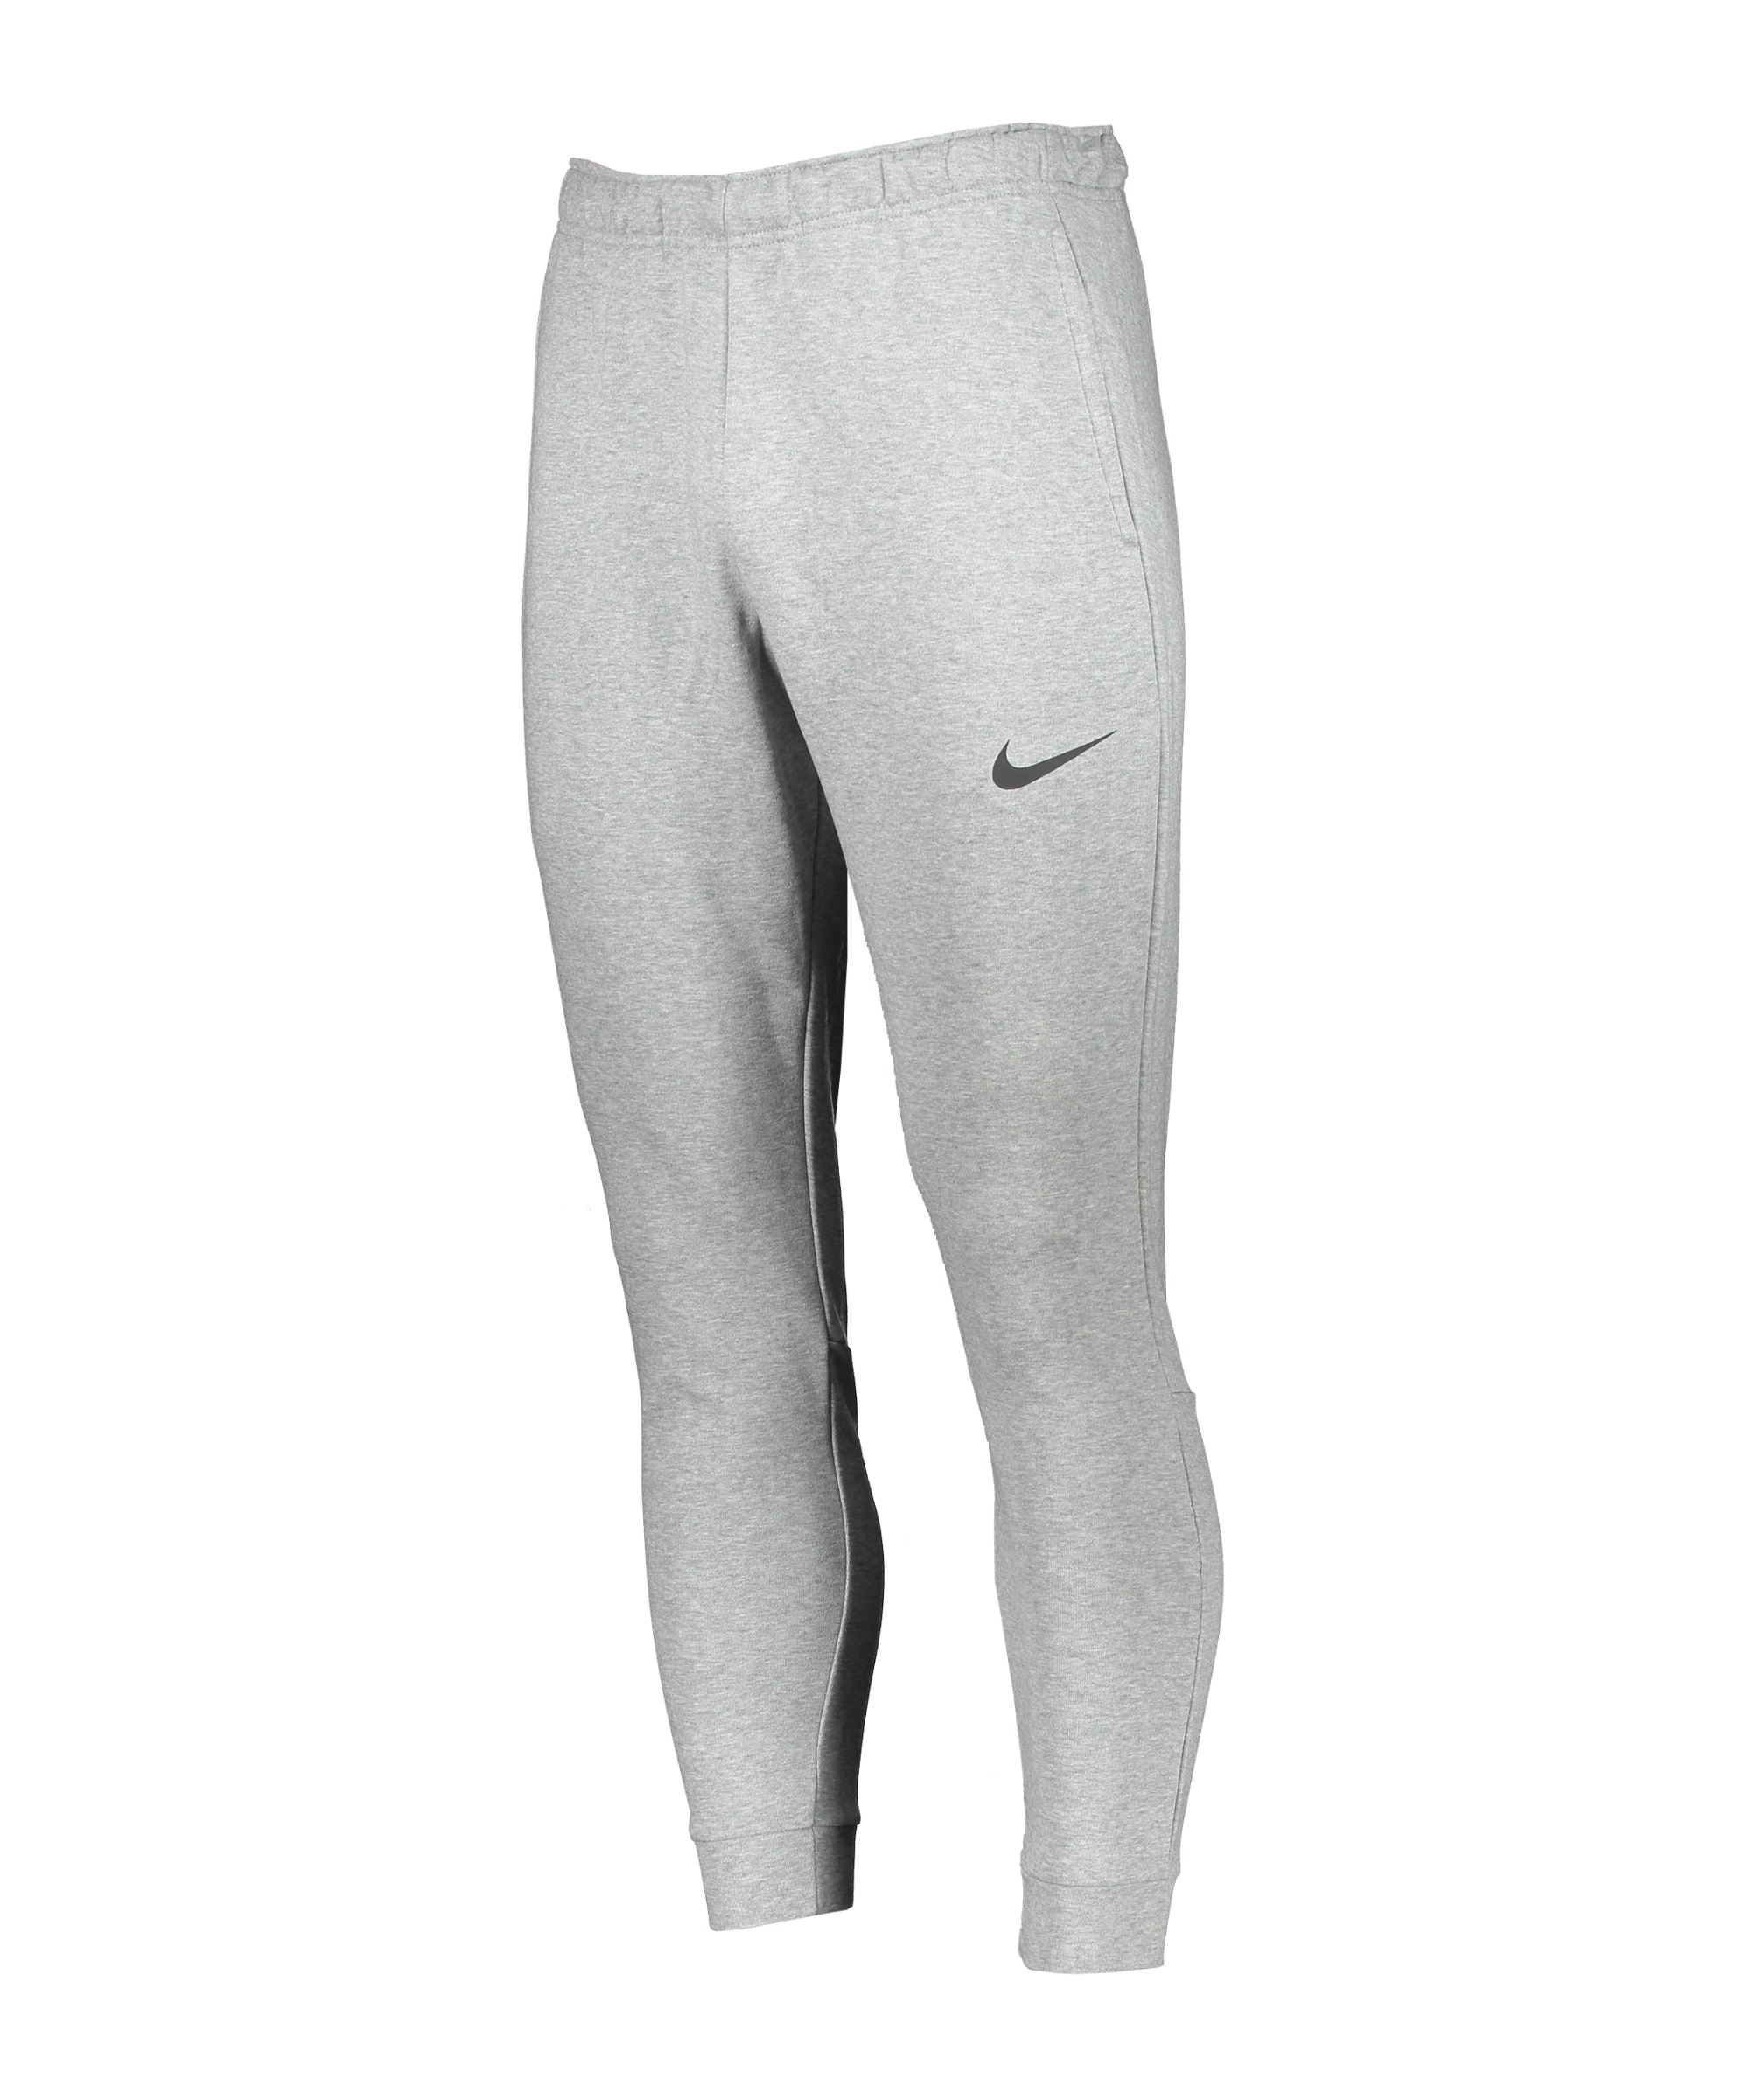 Nike Dri-FIT Tapered Trainingshose Grau F063 - grau